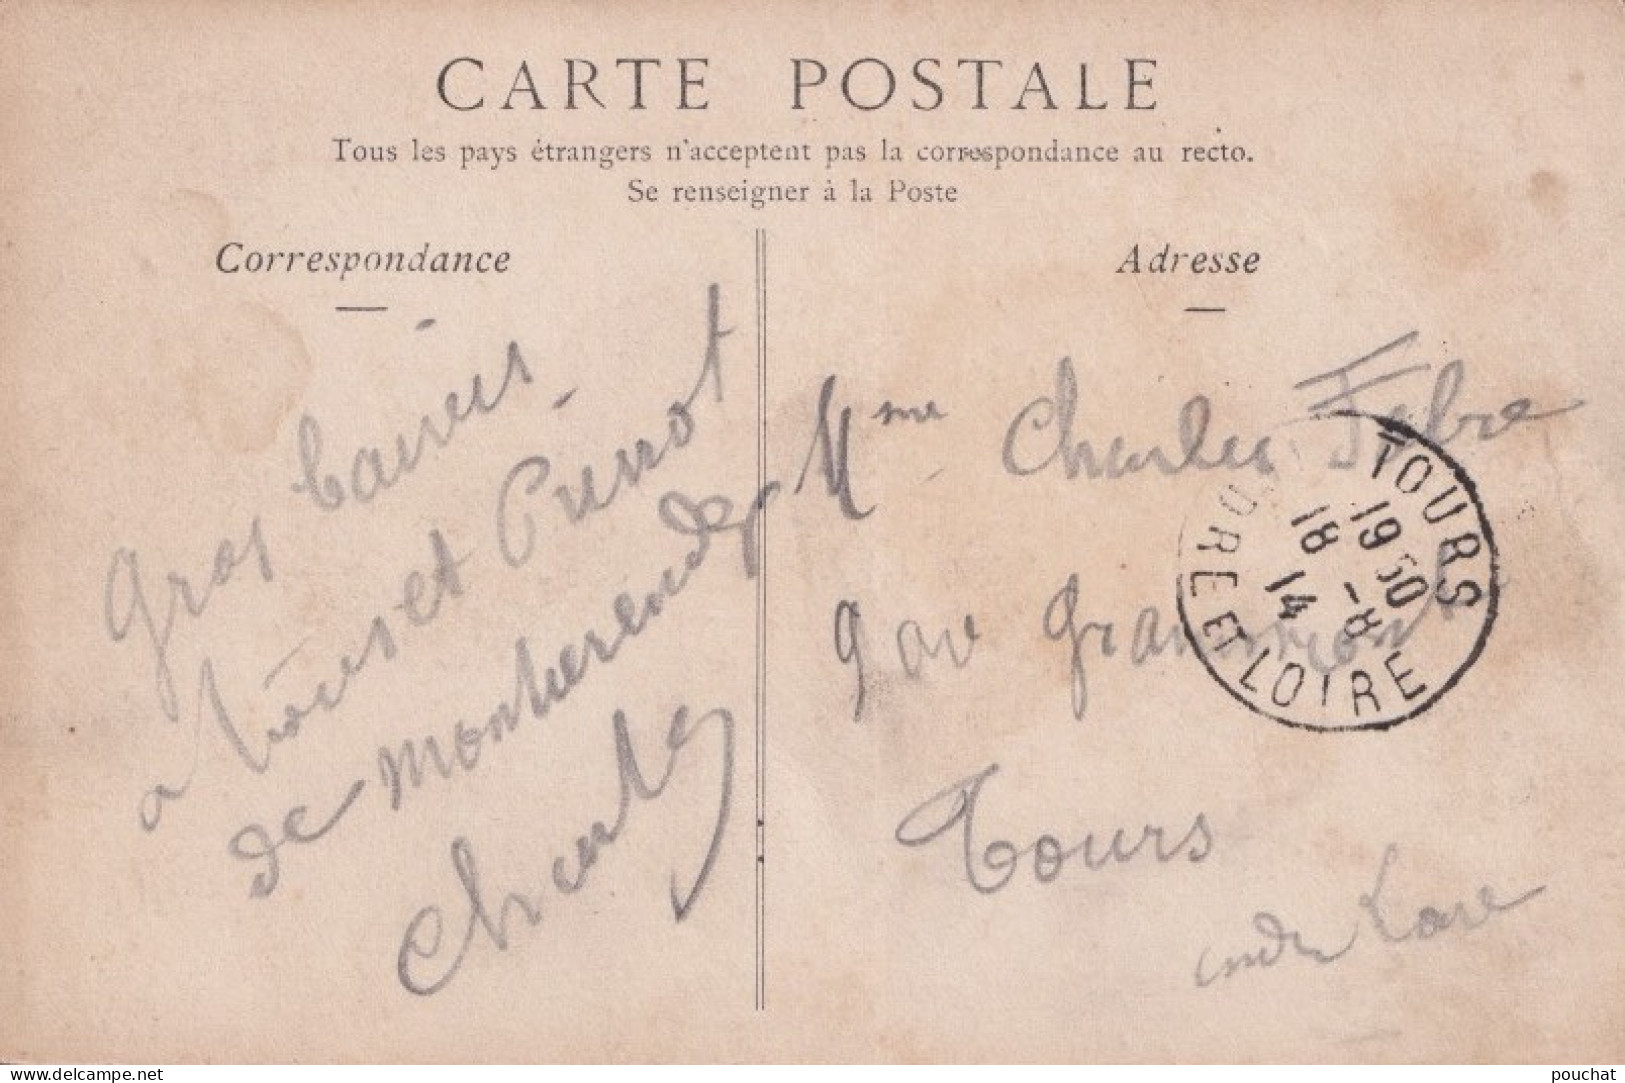 Y21-18) SAINT FLORENT (CHER) LA RUE DE L ' EGLISE - ANIMEE - HABITANTS ECOLIERS - 1914 - ( 2 SCANS ) - Saint-Florent-sur-Cher